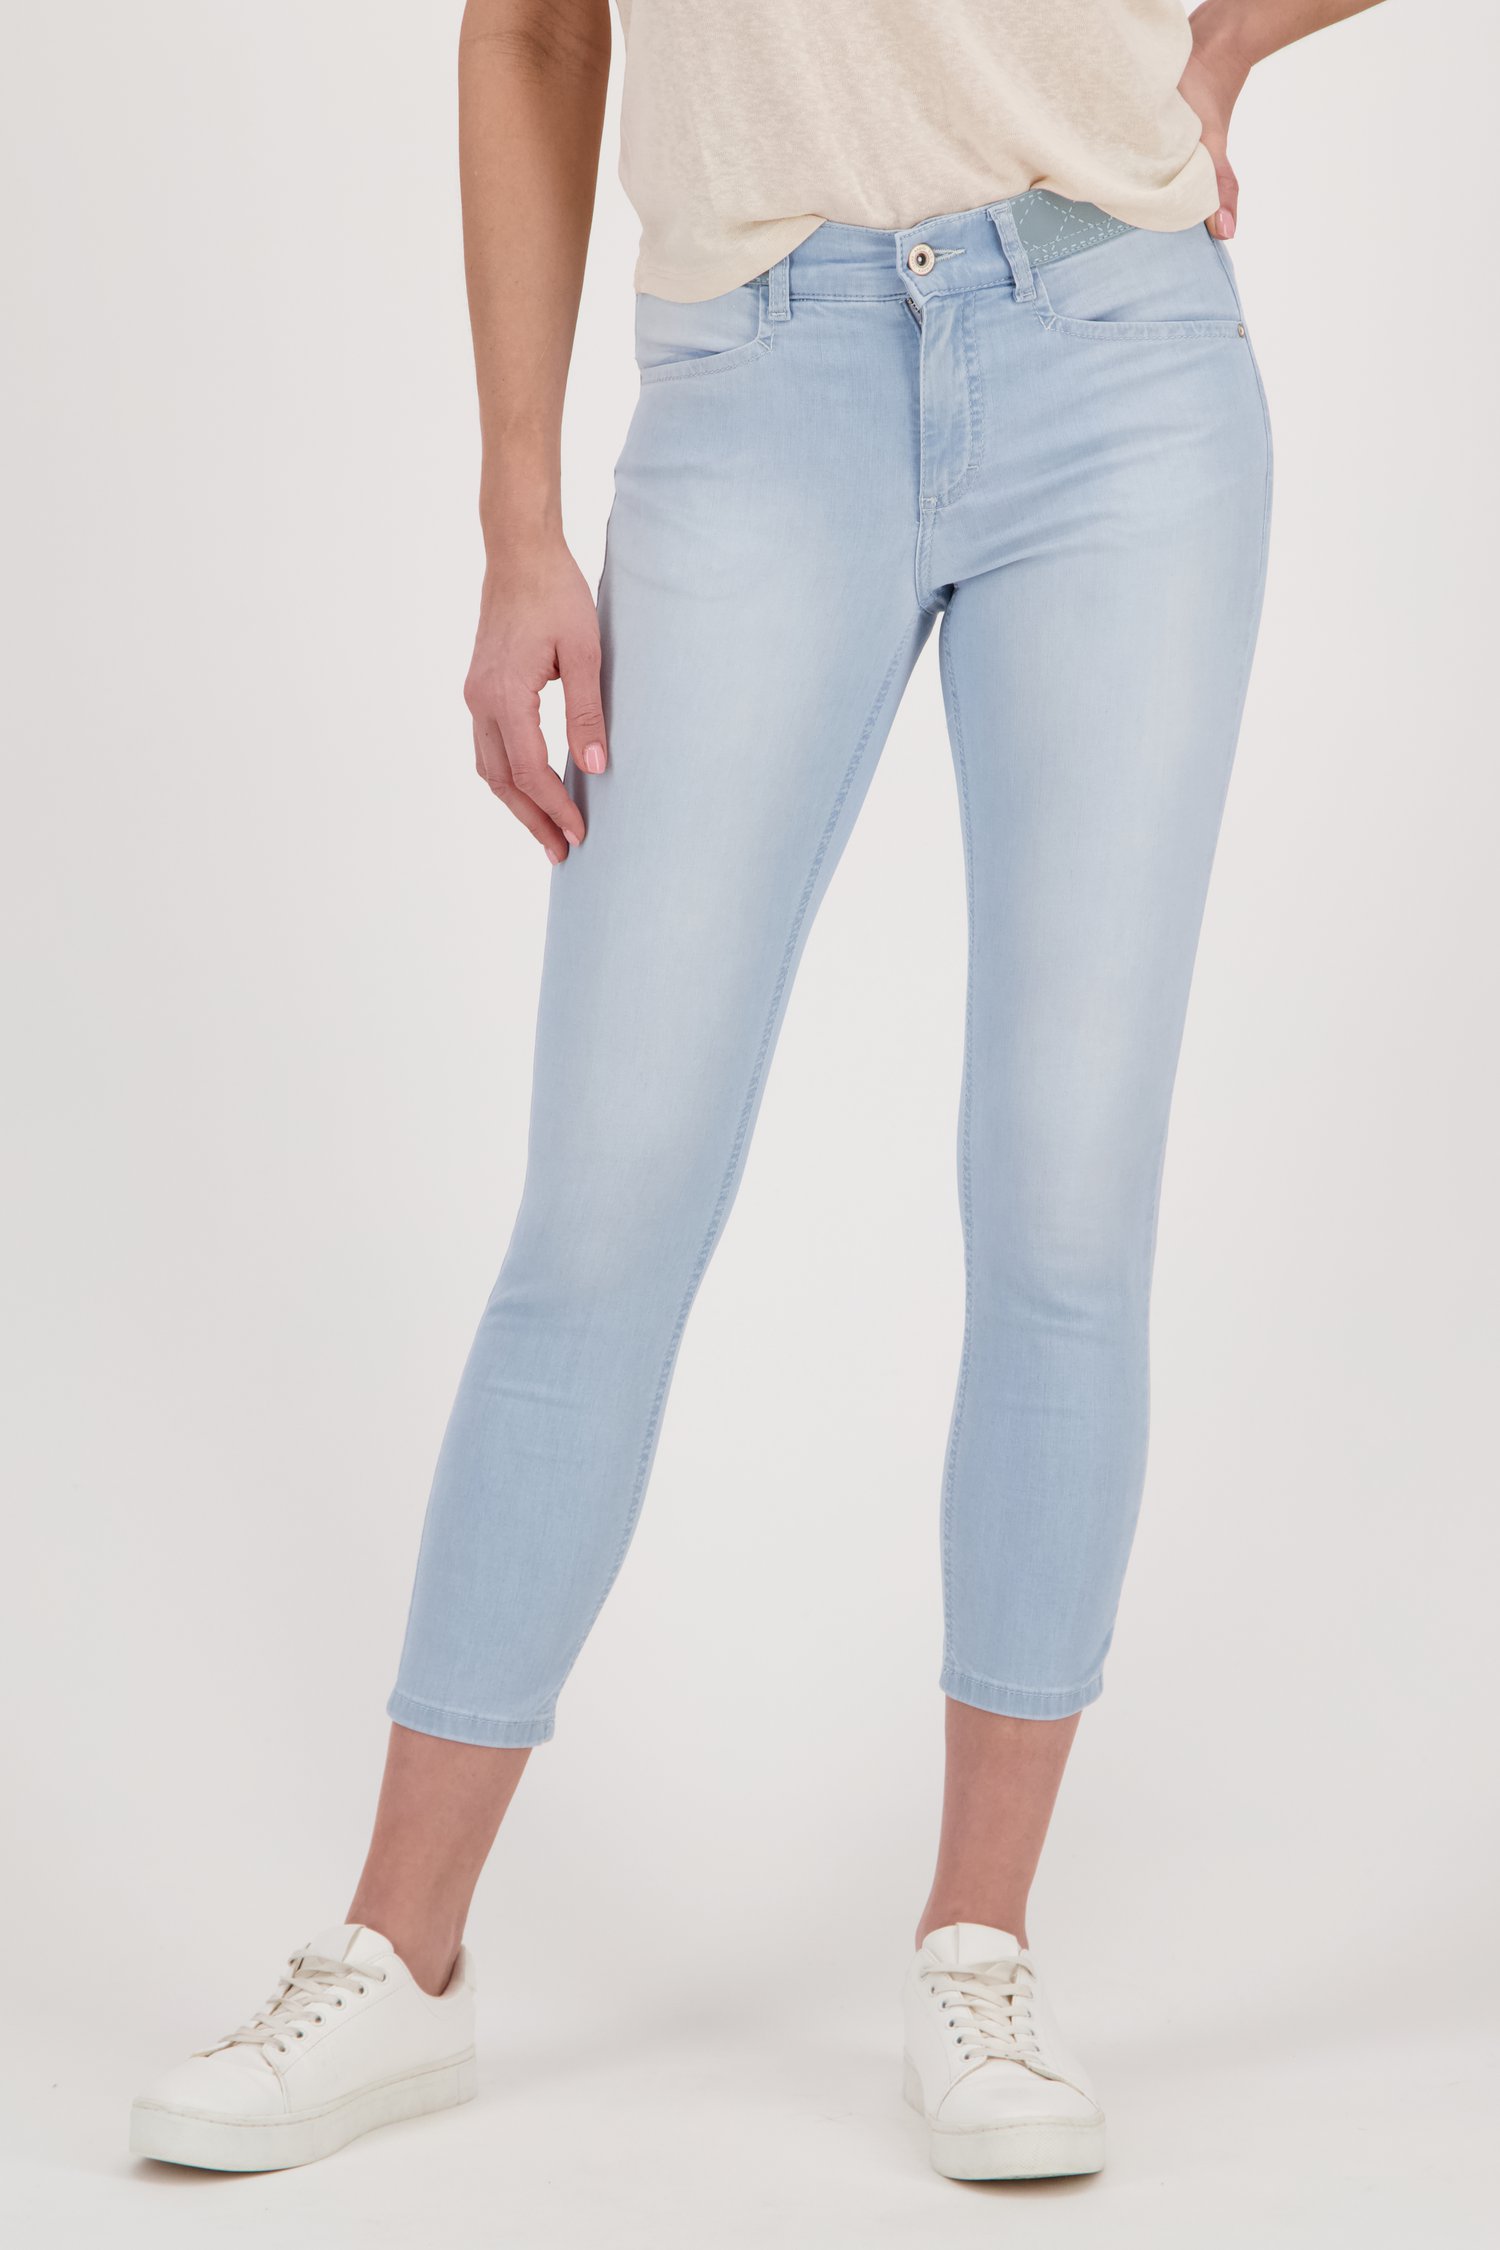 serie innovatie Notitie Lichtblauwe jeans met elastische taille - slim fit van Angels | 9580566 | e5